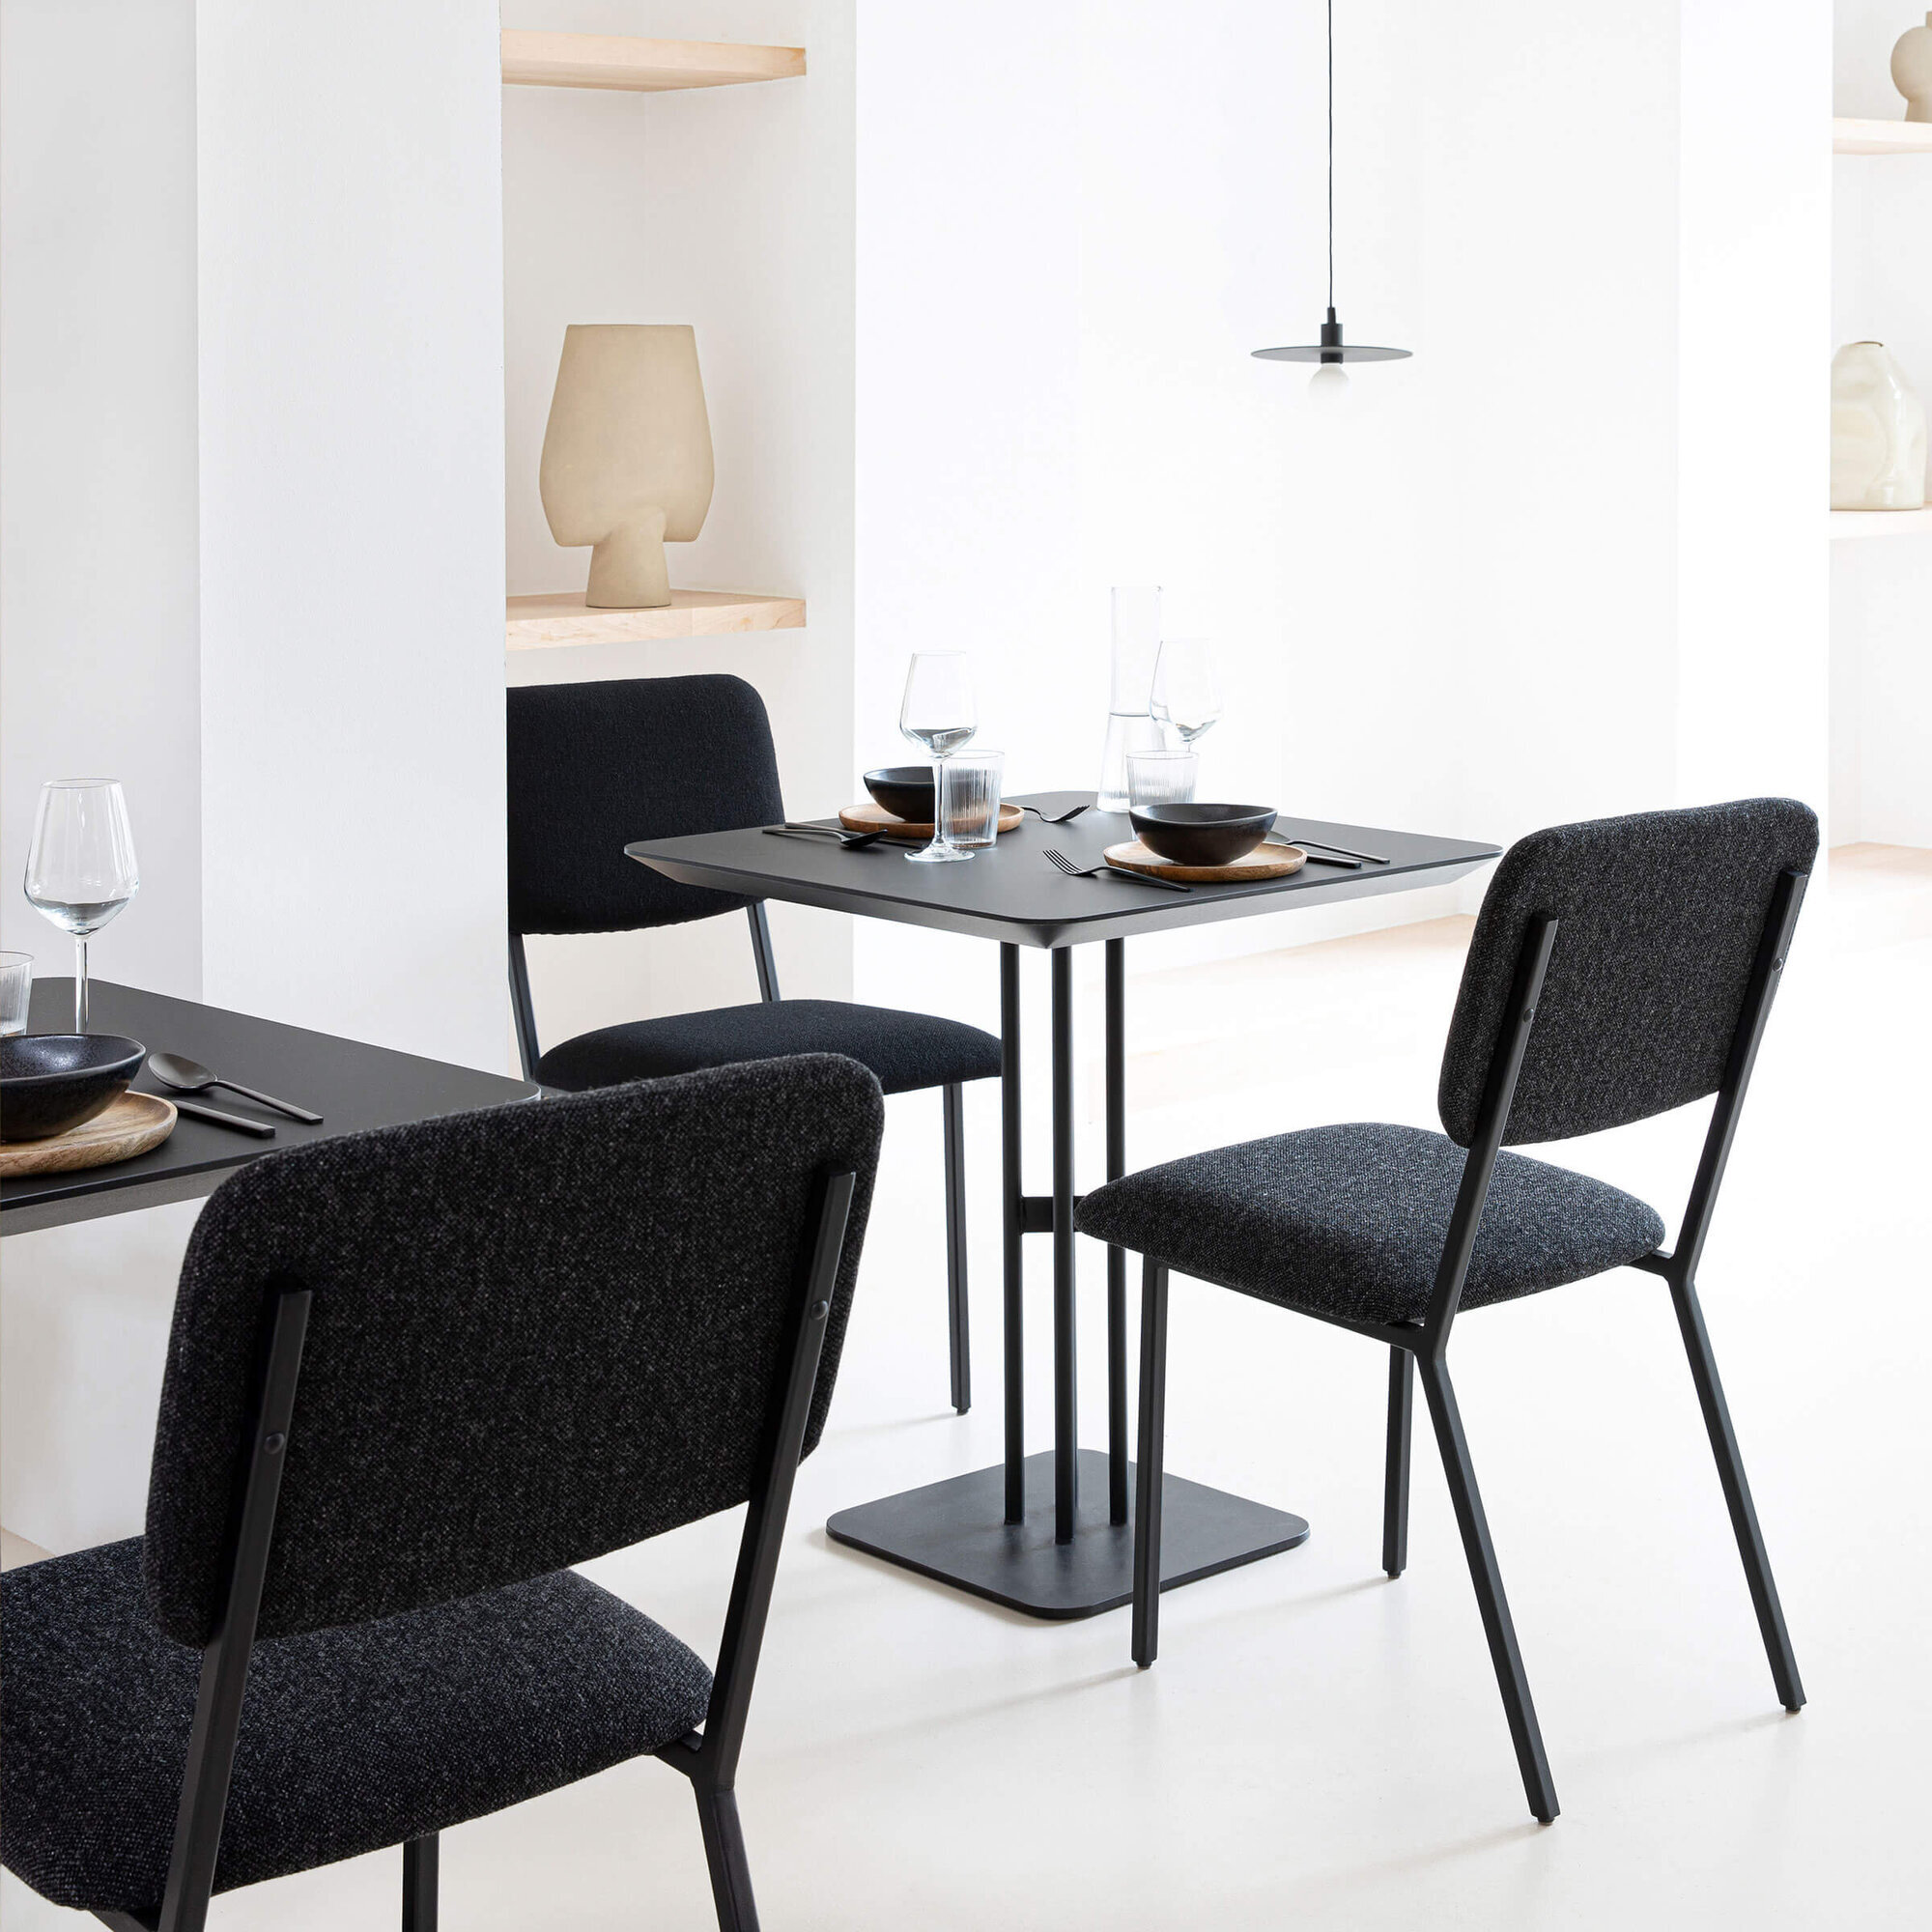 Rectangular Design Bistro Table | Rest x 2 black | HPL Fenix verde comodoro | Studio HENK|